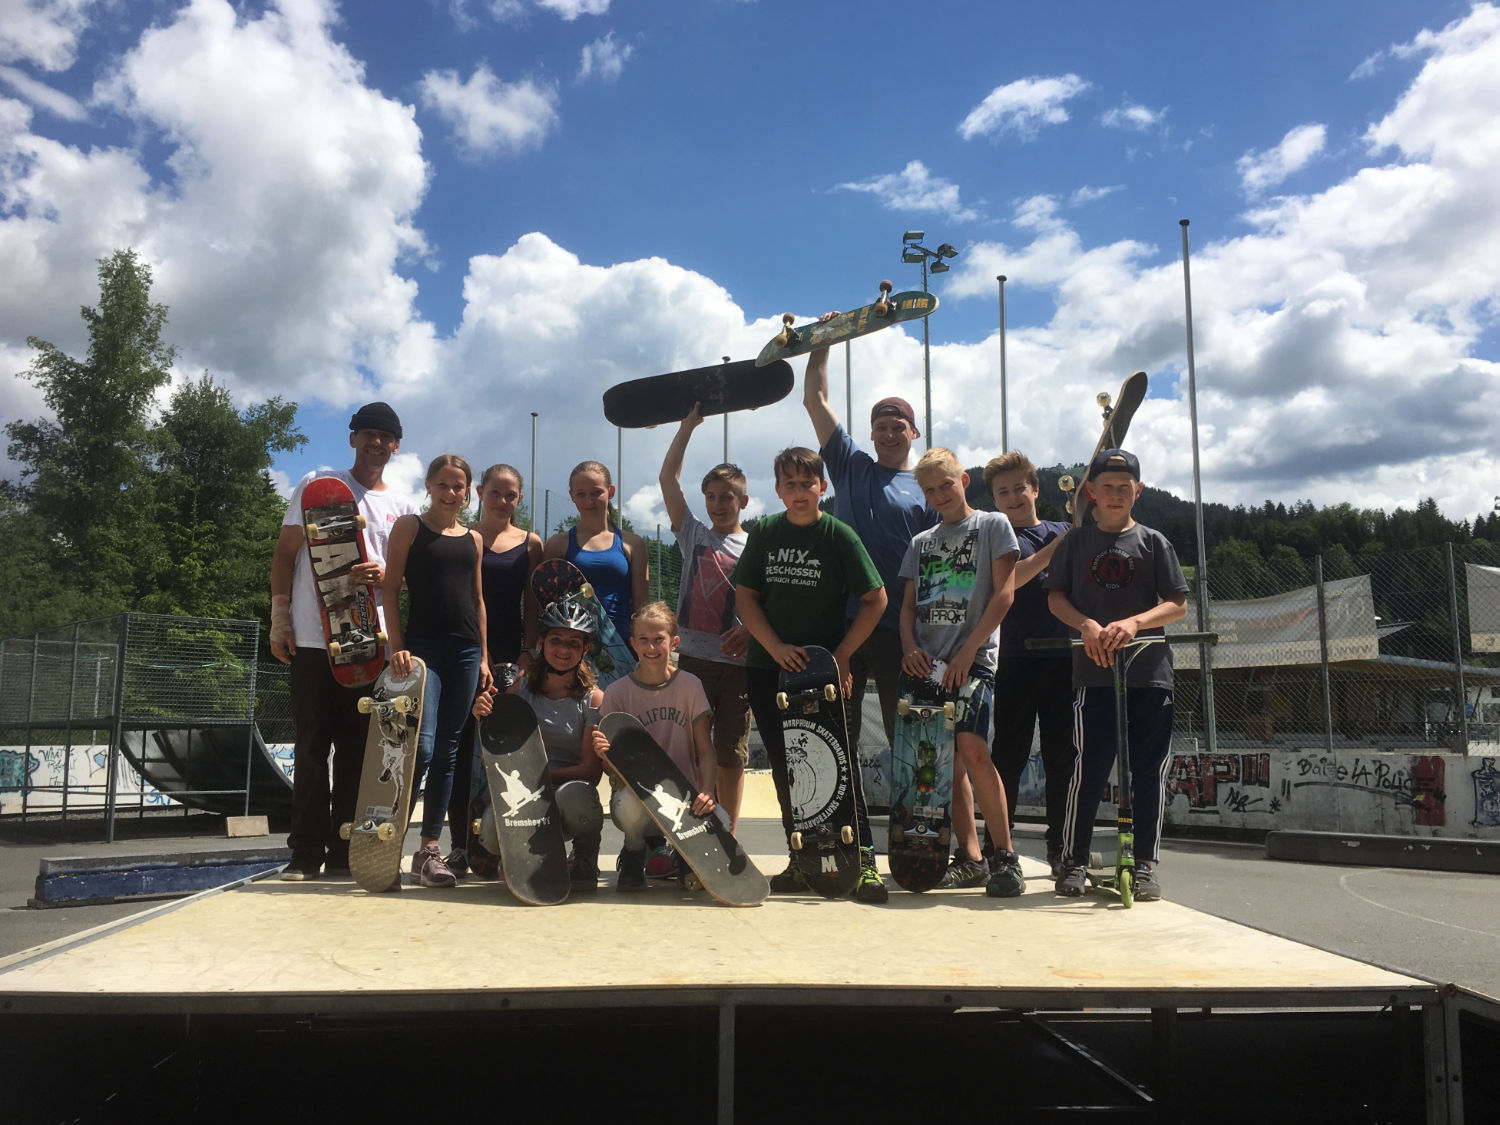 nms sporttage neue mittelschule zweite gruppe skateboard headz